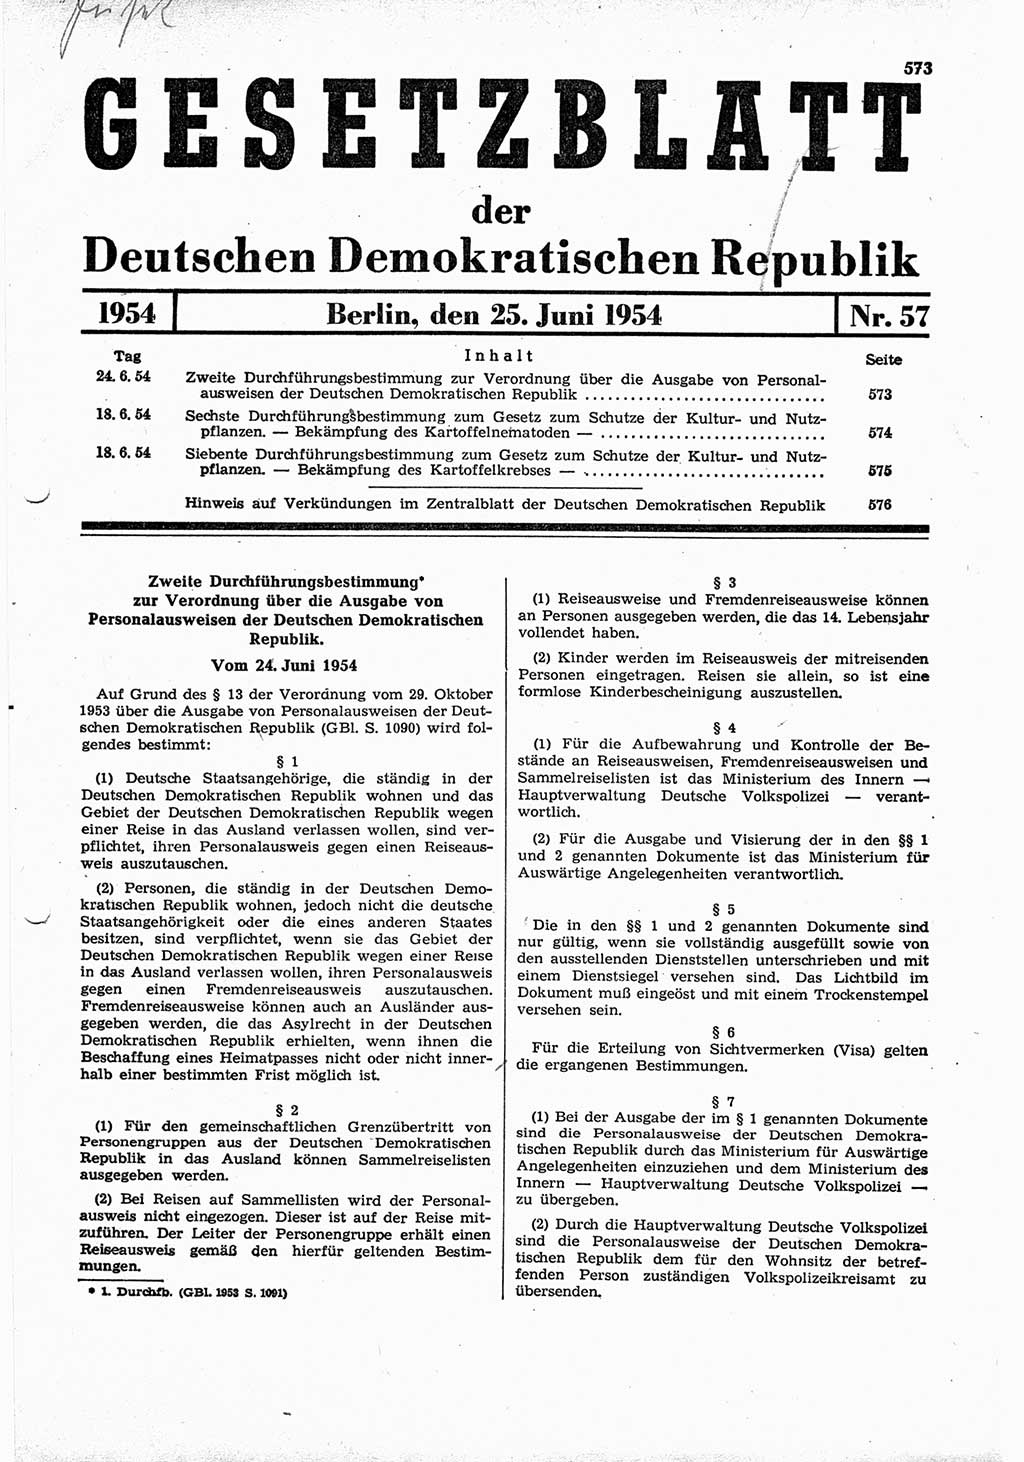 Gesetzblatt (GBl.) der Deutschen Demokratischen Republik (DDR) 1954, Seite 573 (GBl. DDR 1954, S. 573)